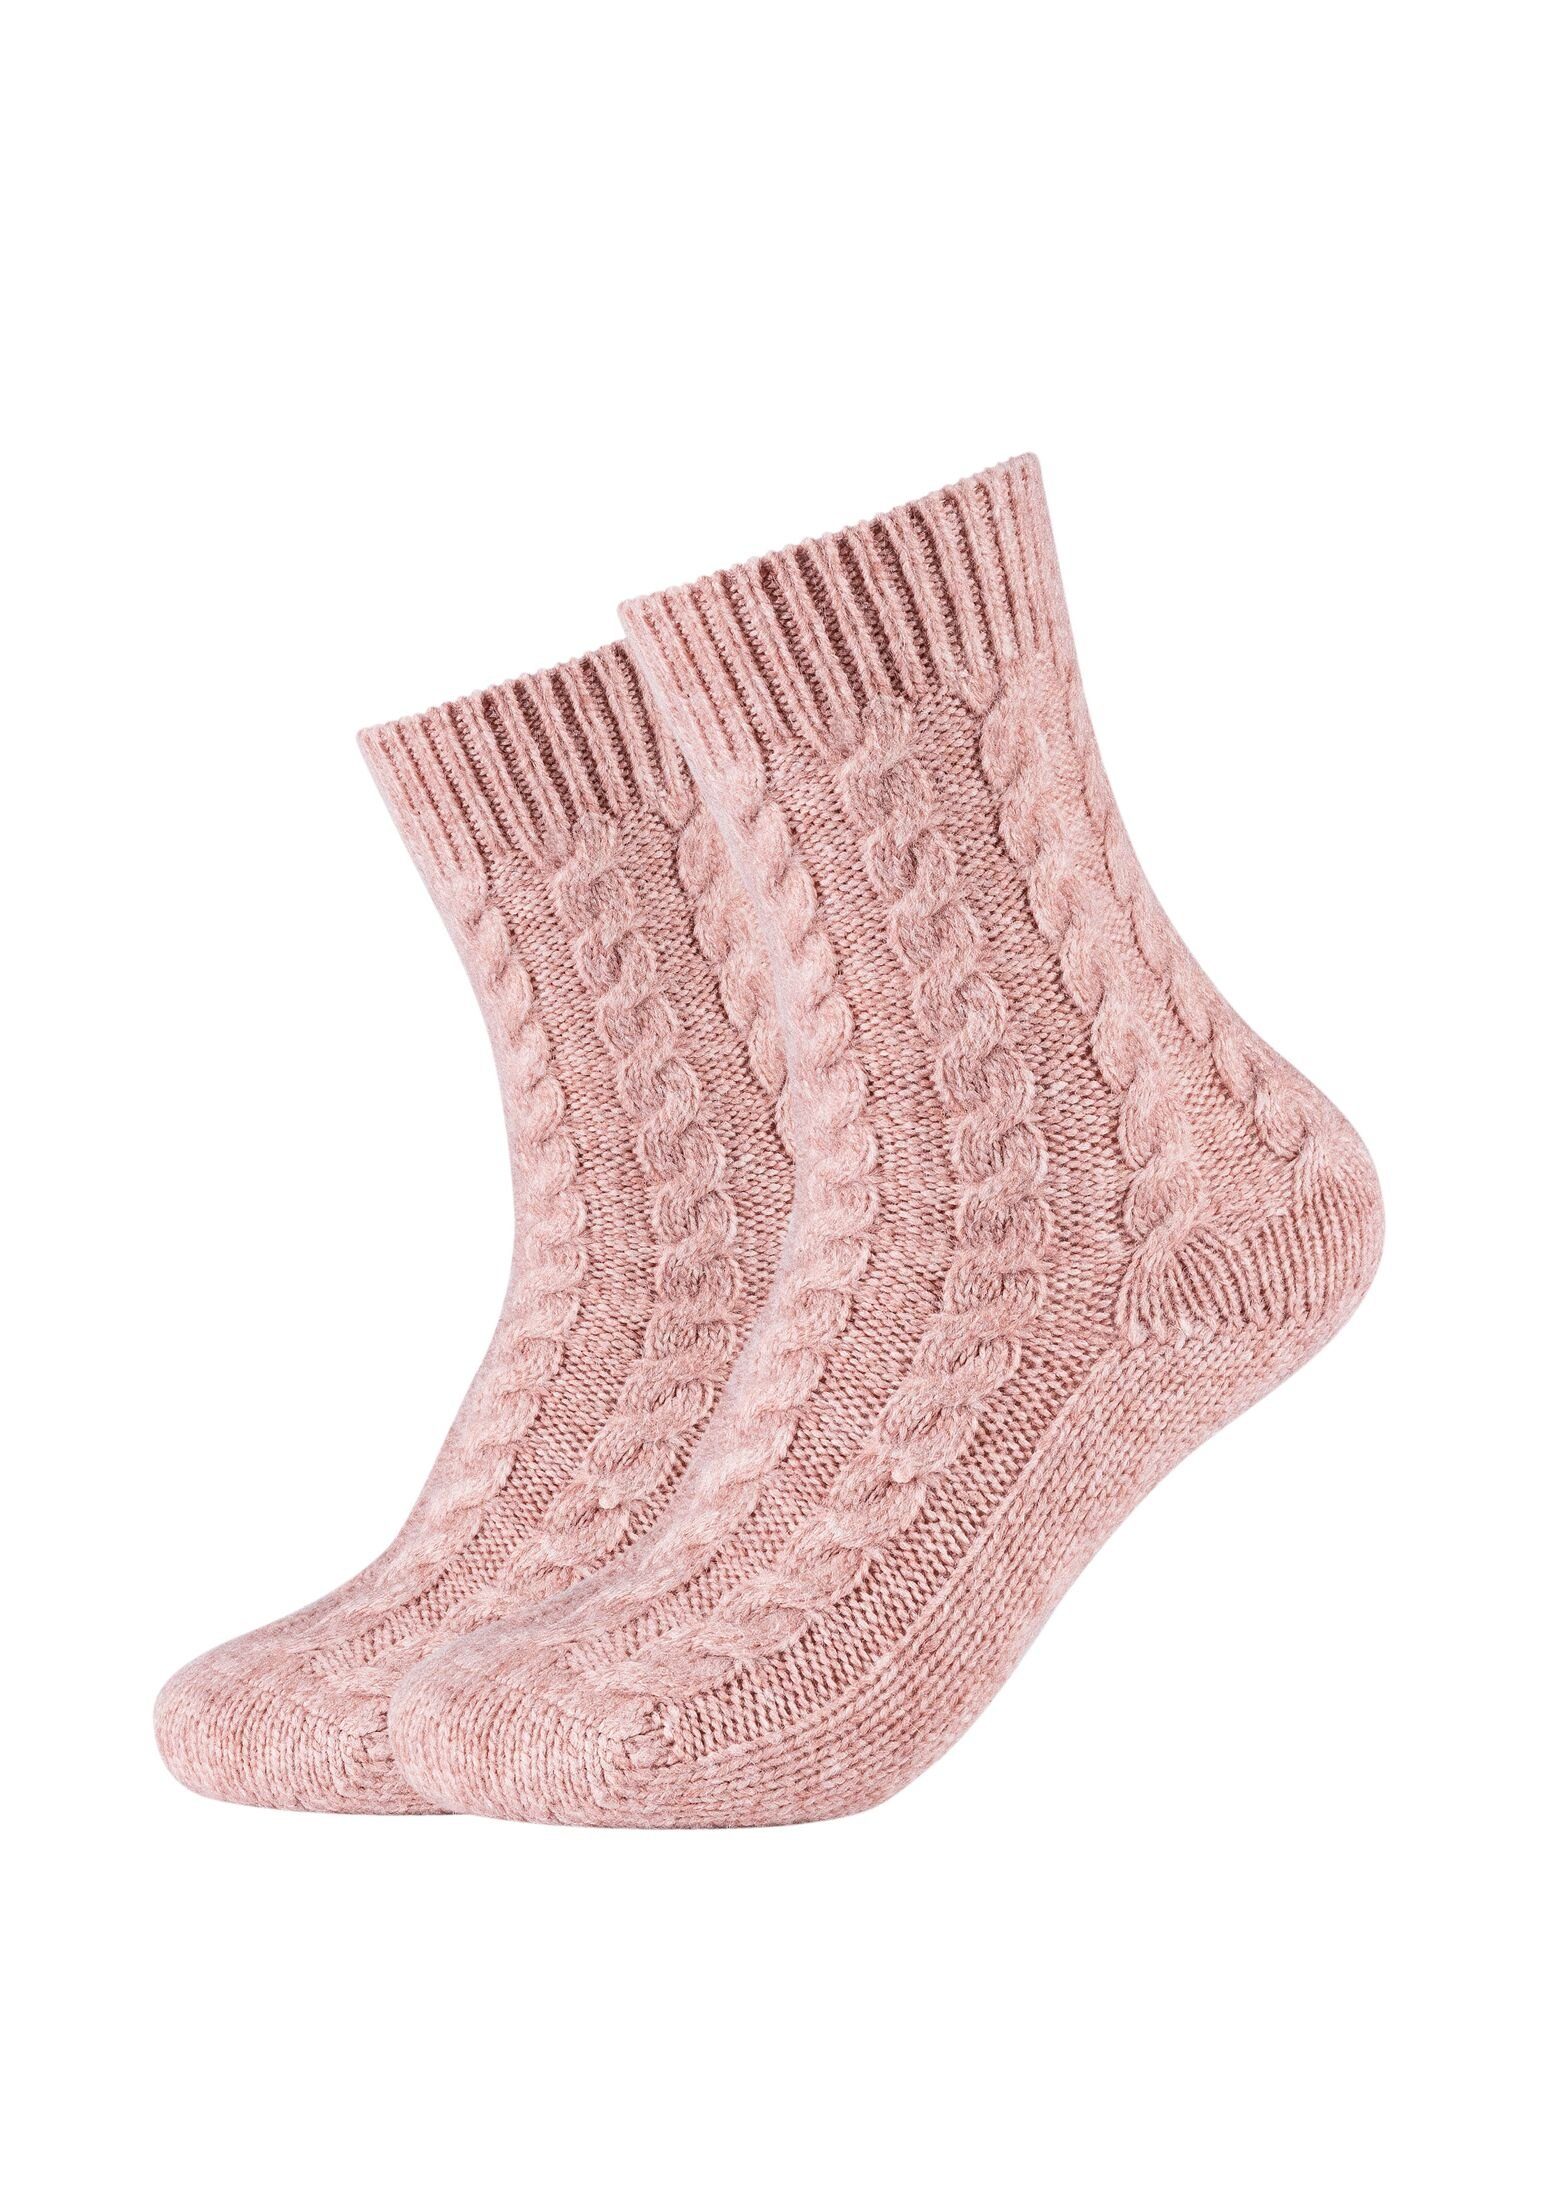 Camano Socken Socken Cosy Kuschelsocken Flauschig Warm Damen Zopfmuster Lang dusty rose